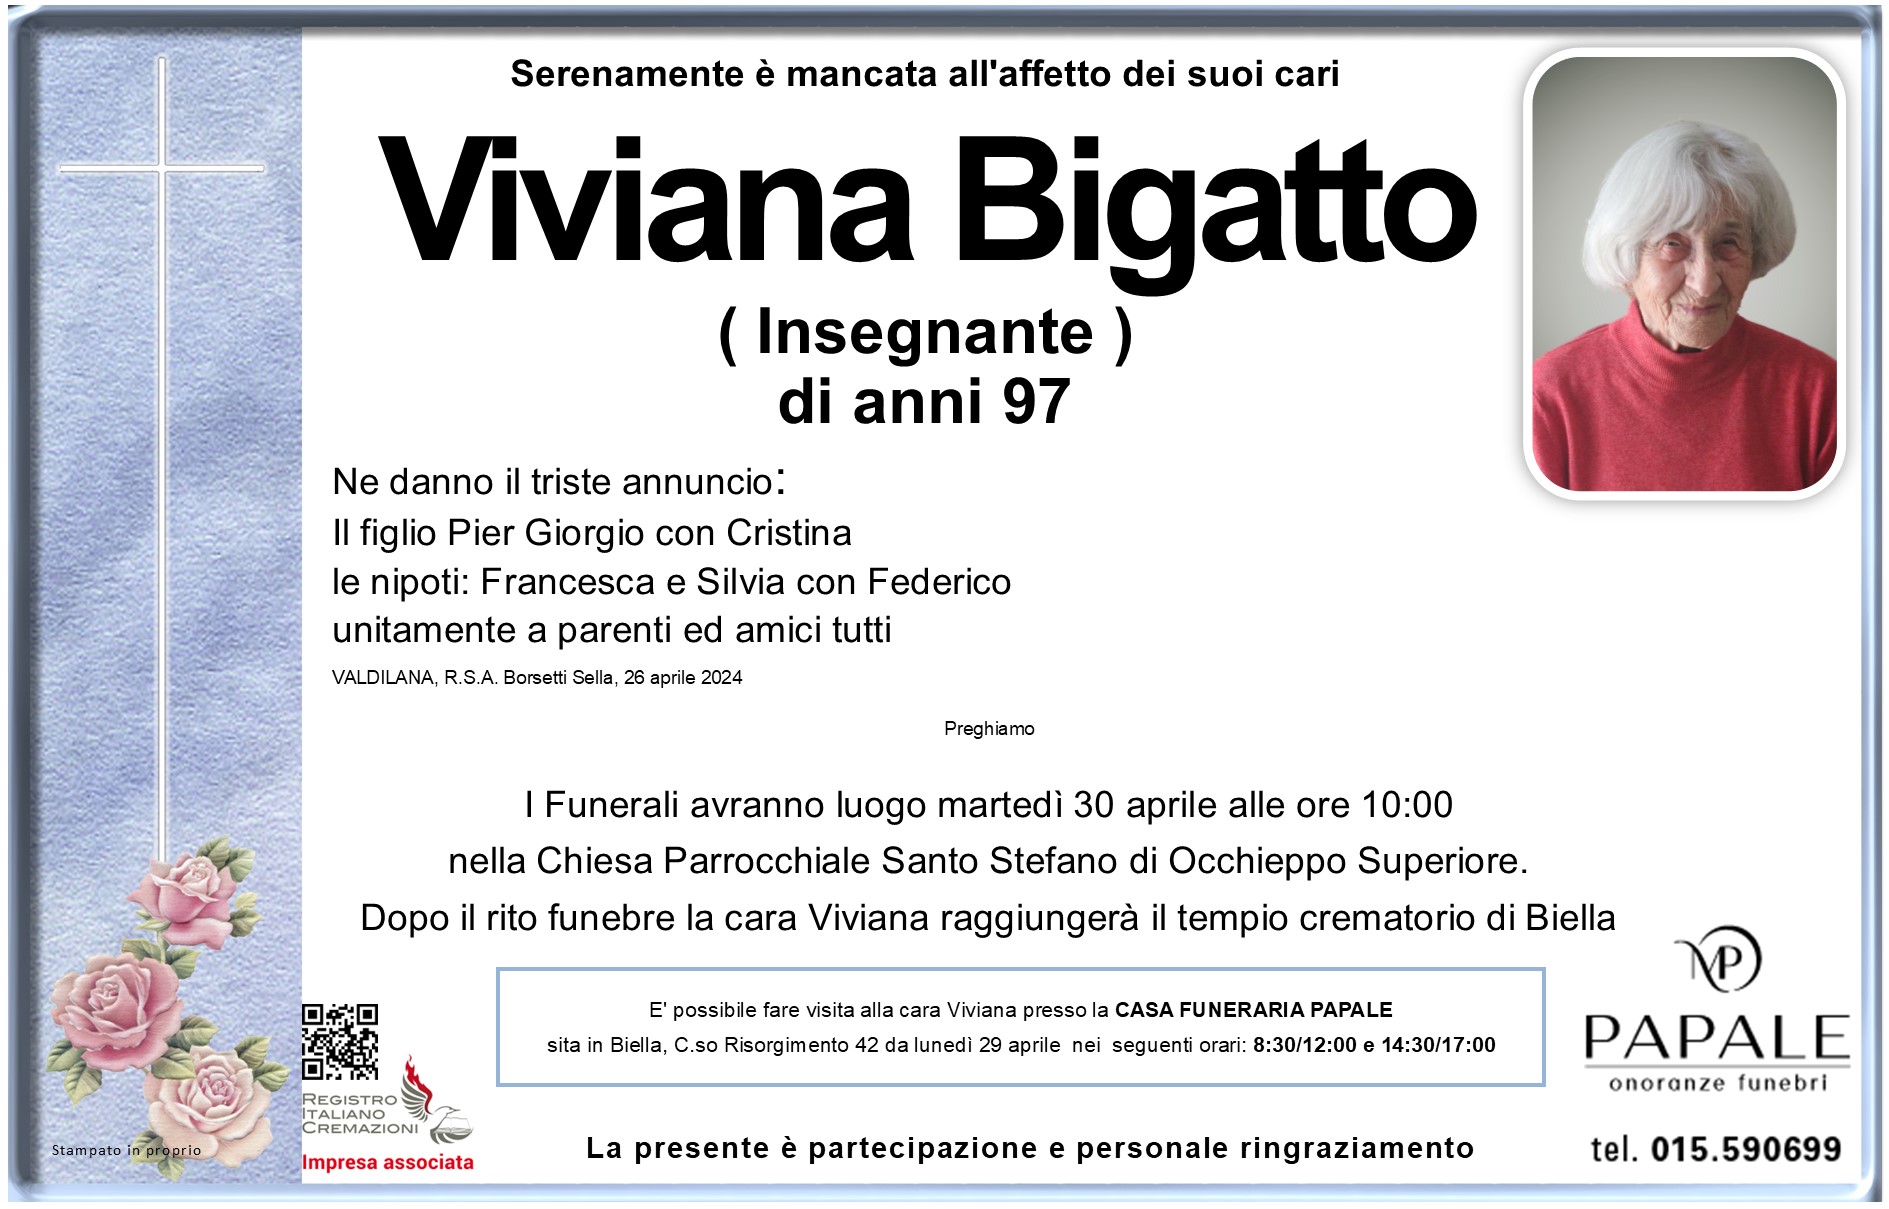 Onoranze Funebri Papale - Necrologi - Necrologio di Viviana Bigatto